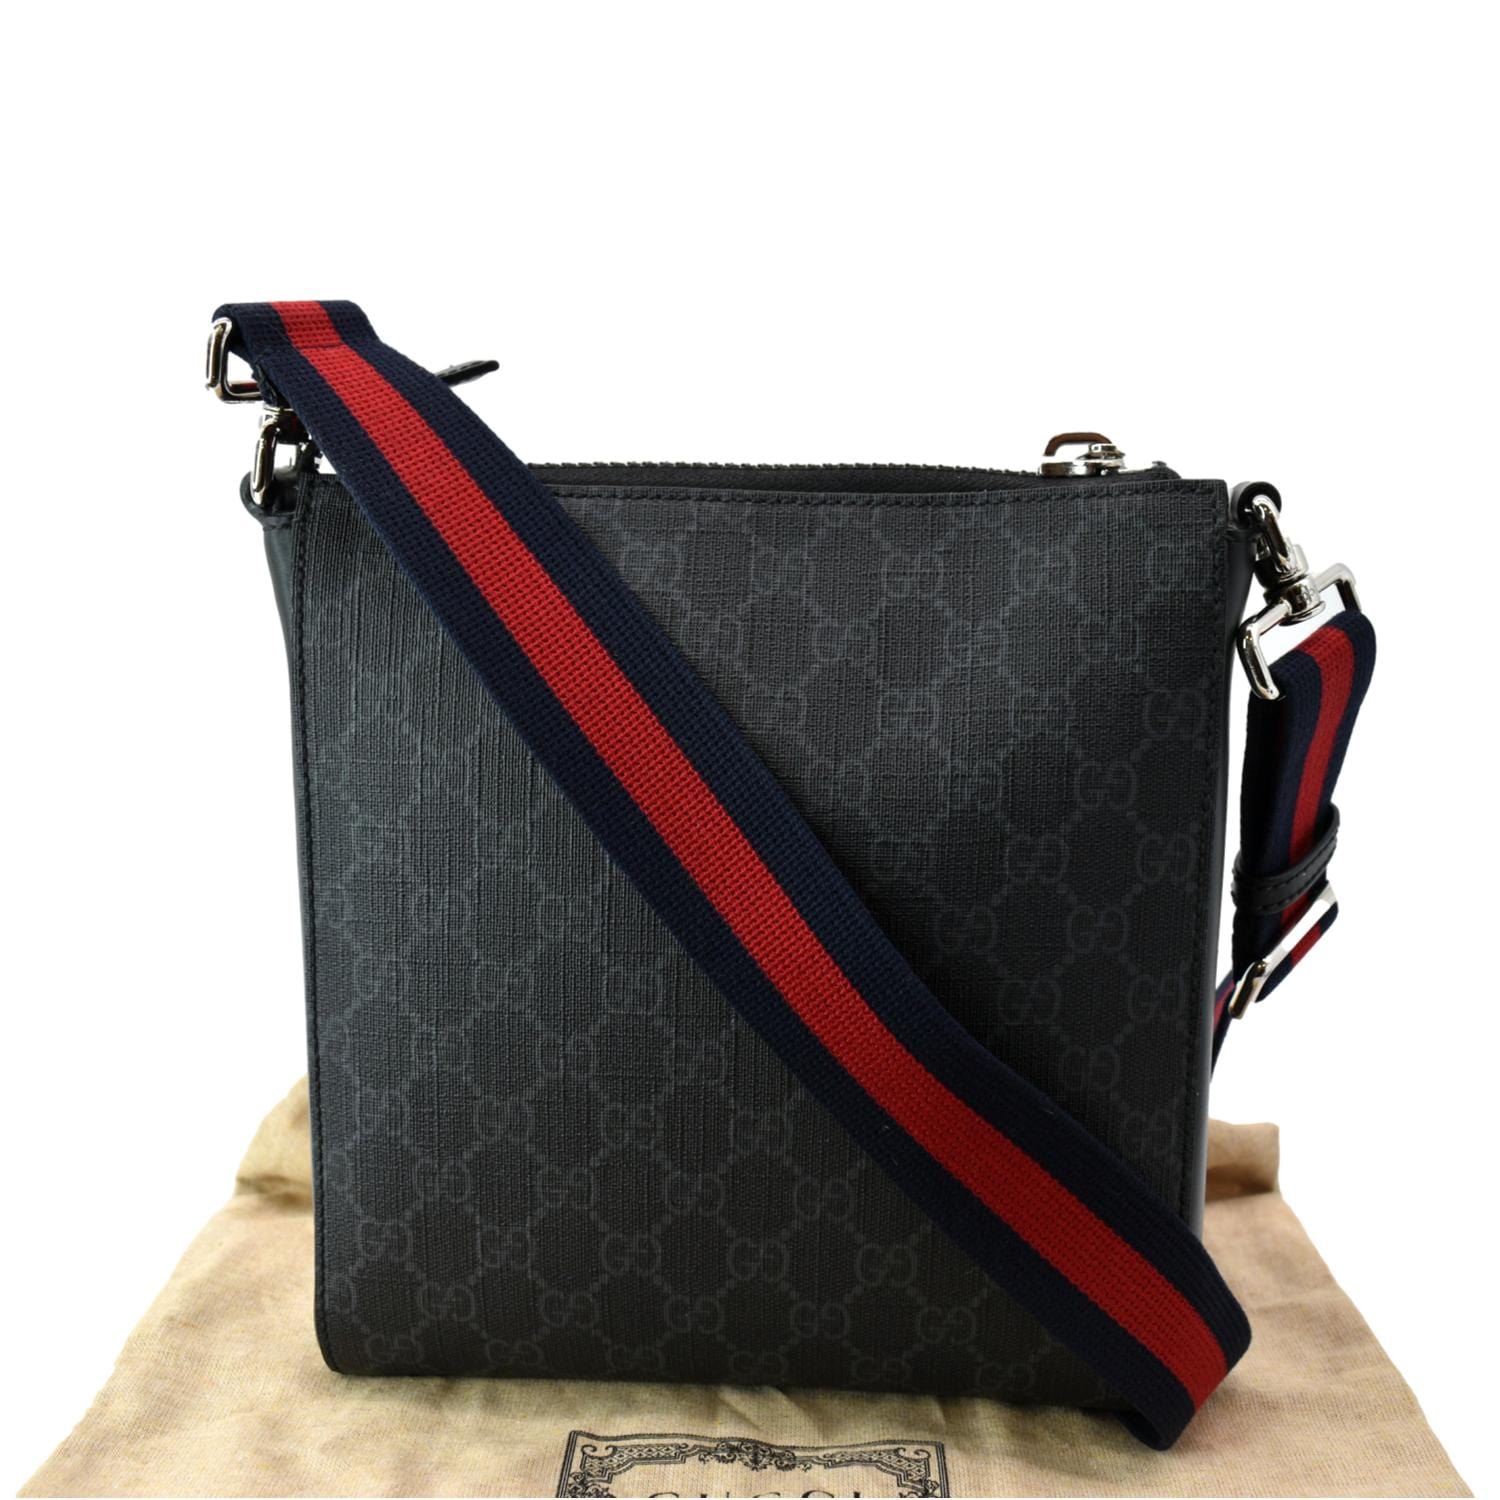 Gucci GG Supreme Small Side Bag Black